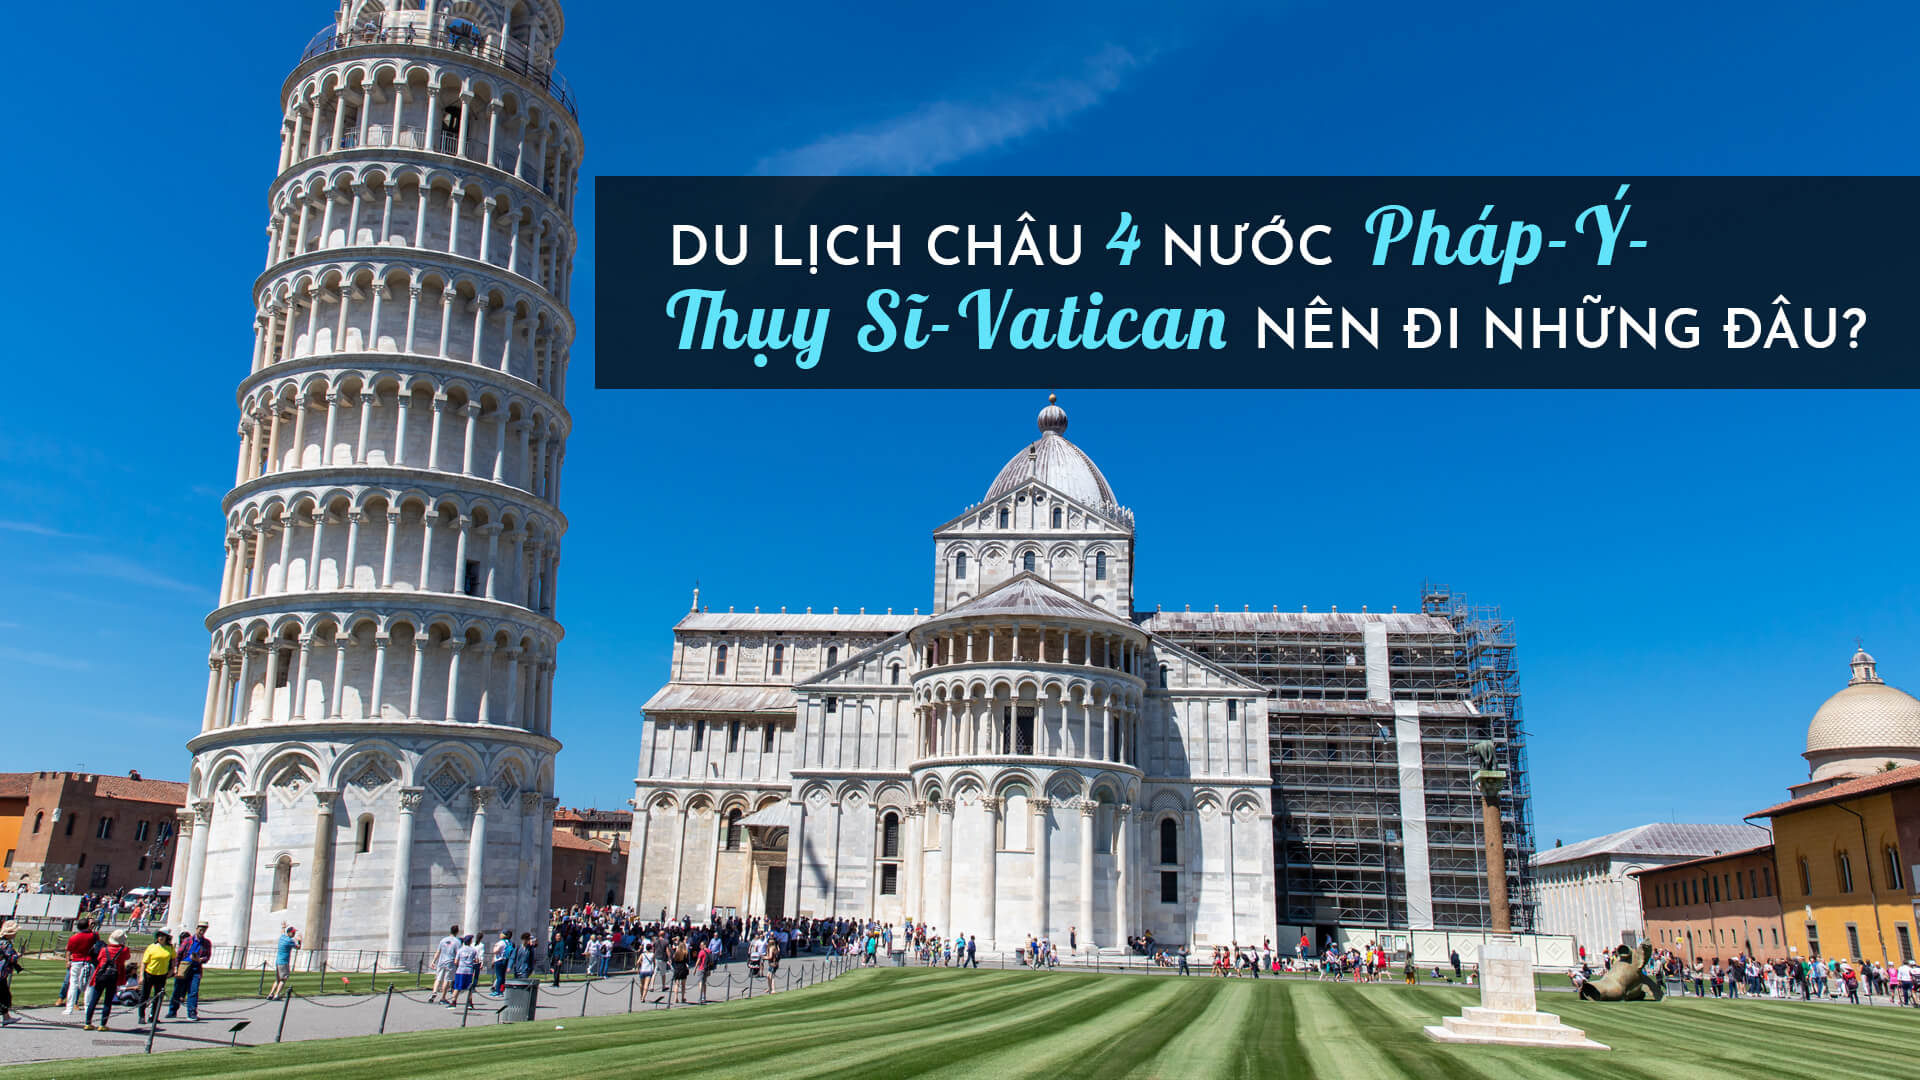 Du lịch châu Âu 4 nước Pháp - Ý- Thụy Sĩ - Vatican nên đi những đâu?